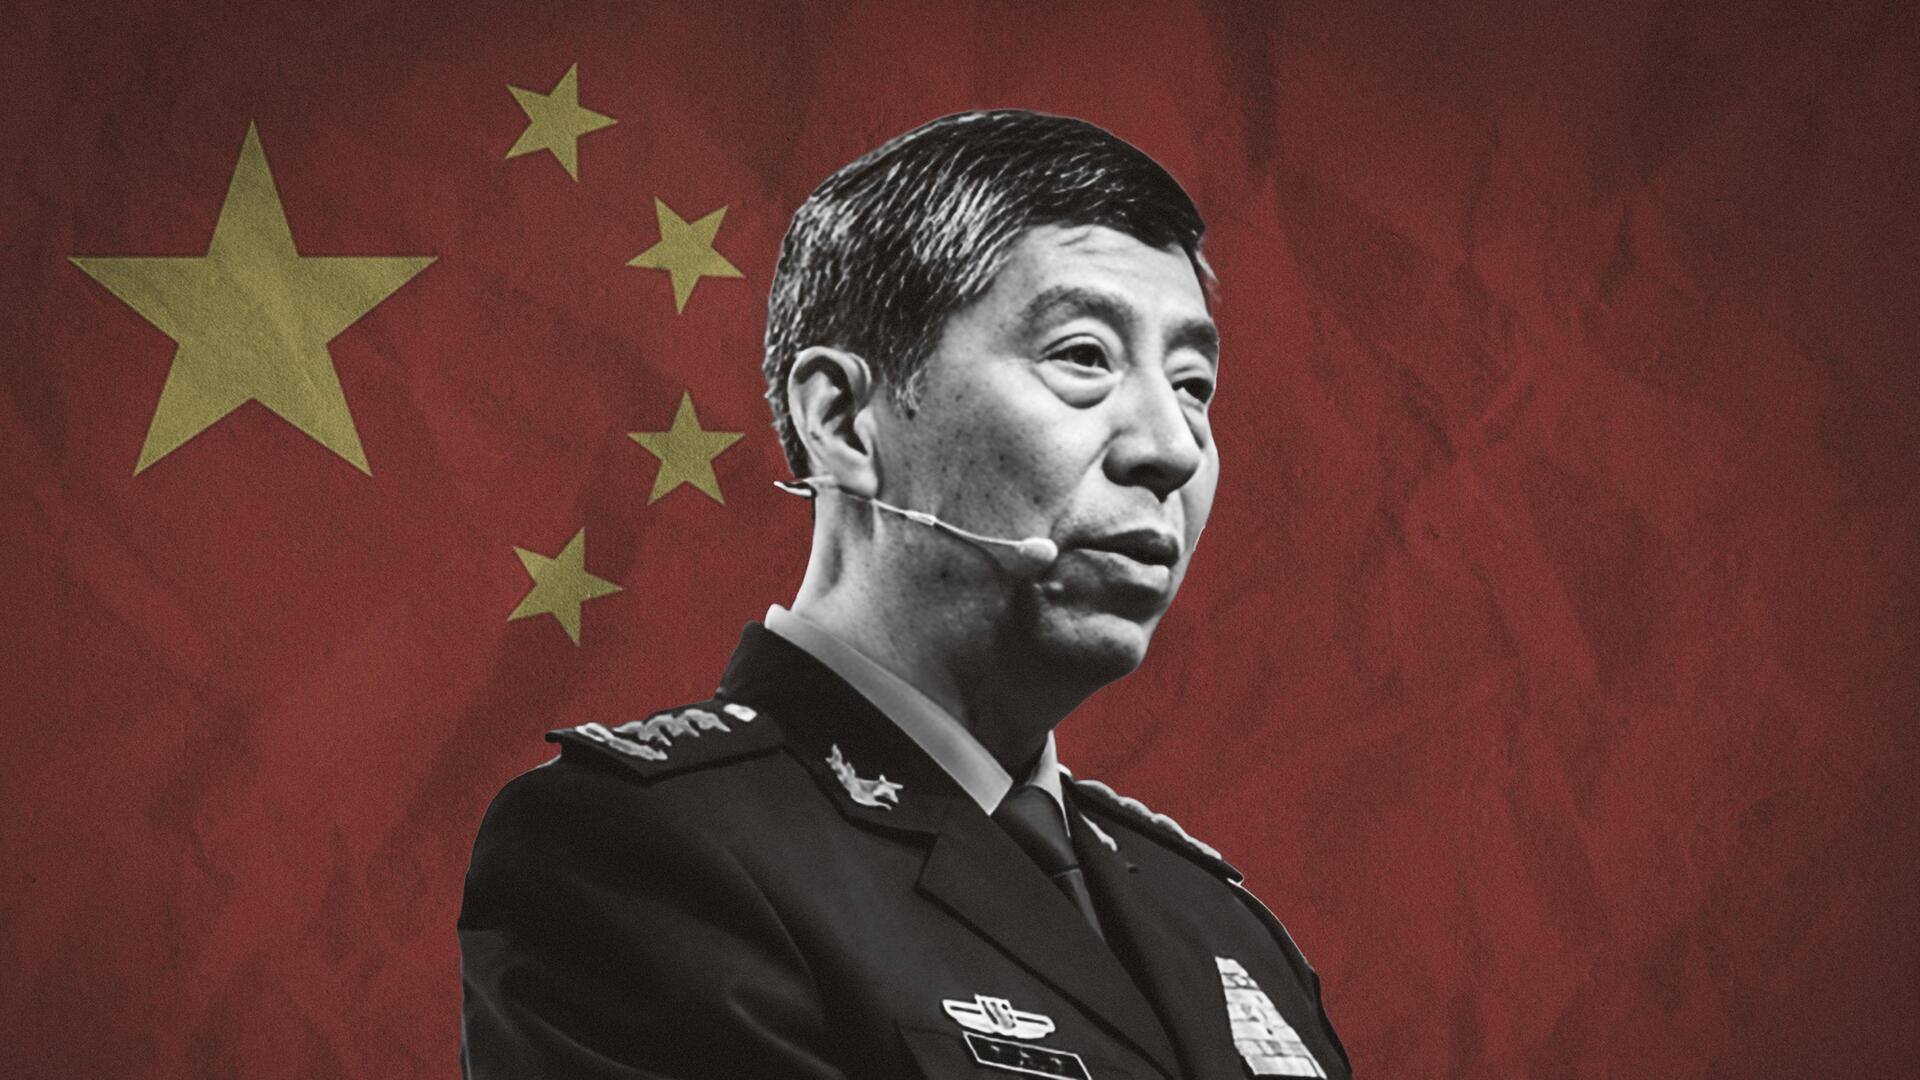 चीन और अमेरिका के बीच संघर्ष दुनिया के लिए असहनीय आपदा लाएगा- चीनी विदेश मंत्री